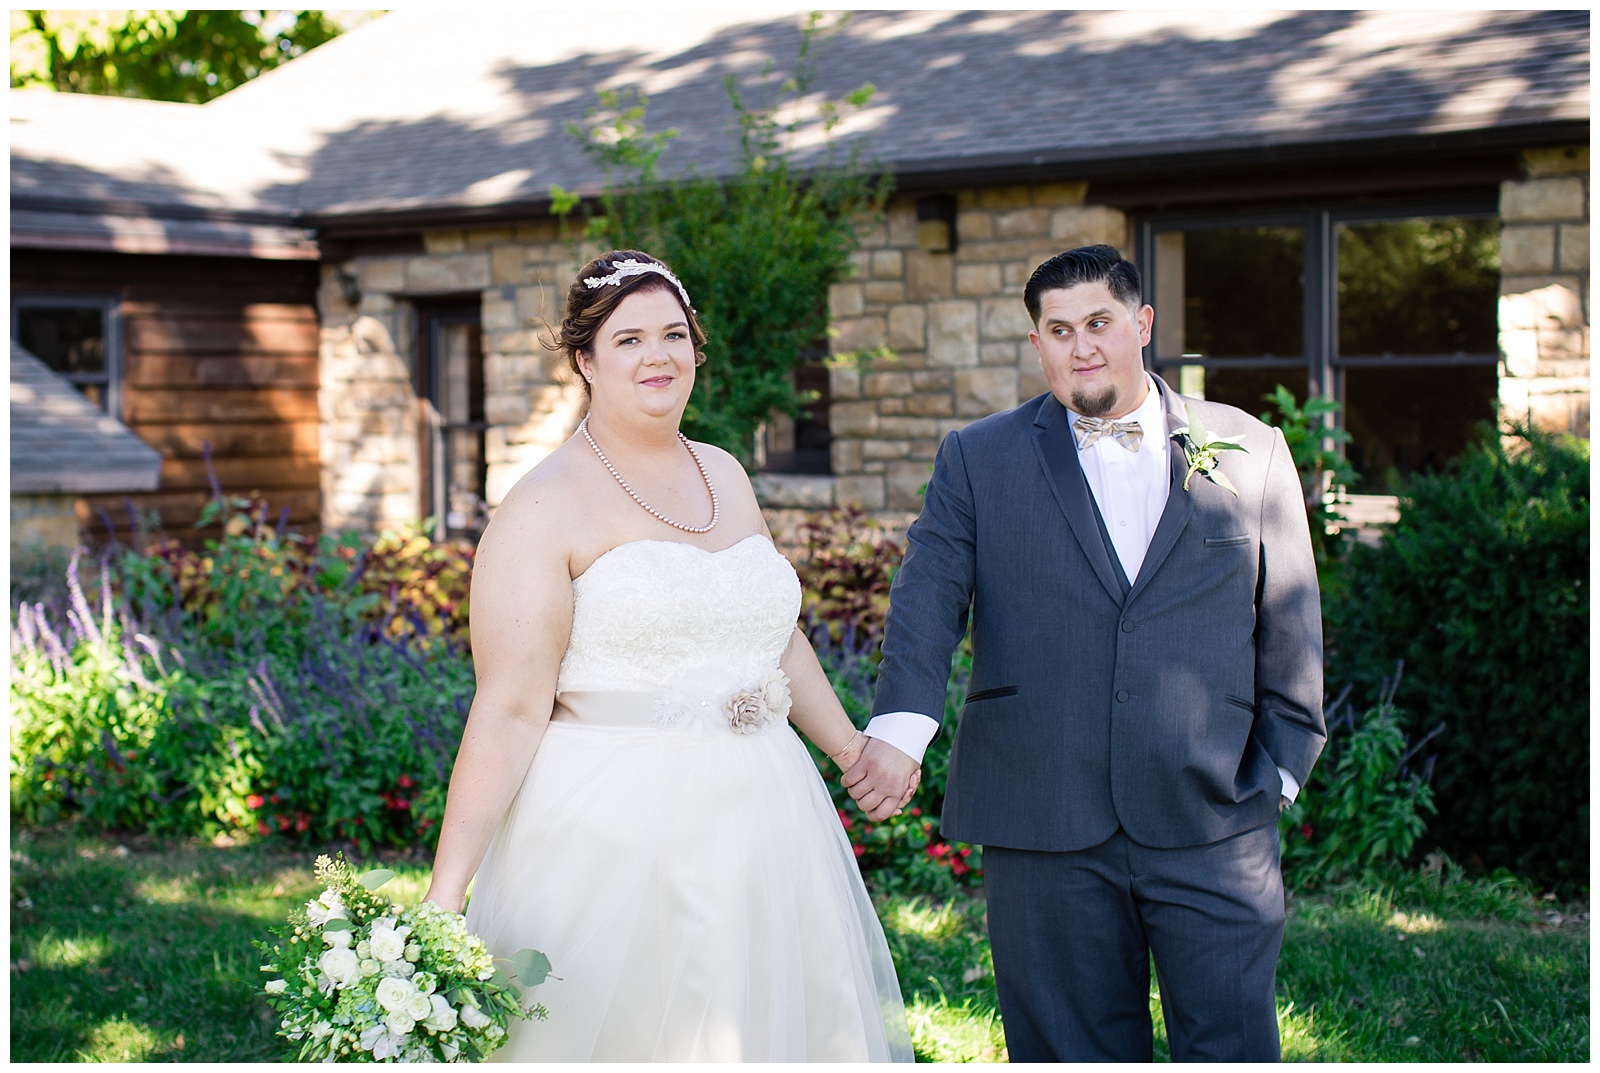 Wedding photography at Lake Shawnee in Topeka, Kansas.